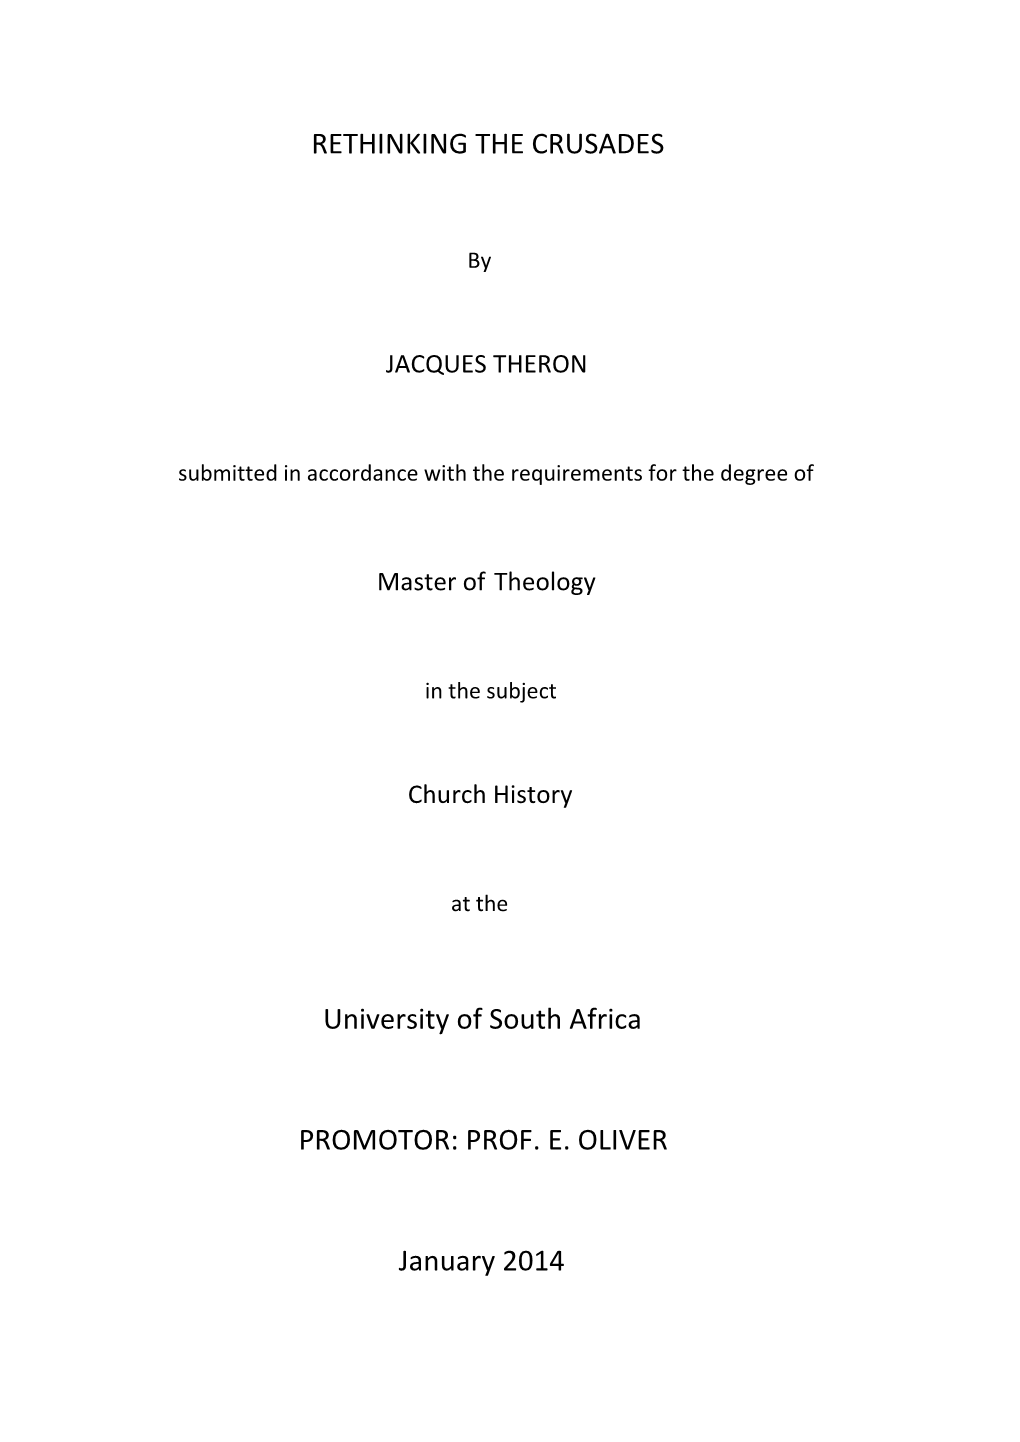 RETHINKING the CRUSADES University of South Africa PROMOTOR: PROF. E. OLIVER January 2014